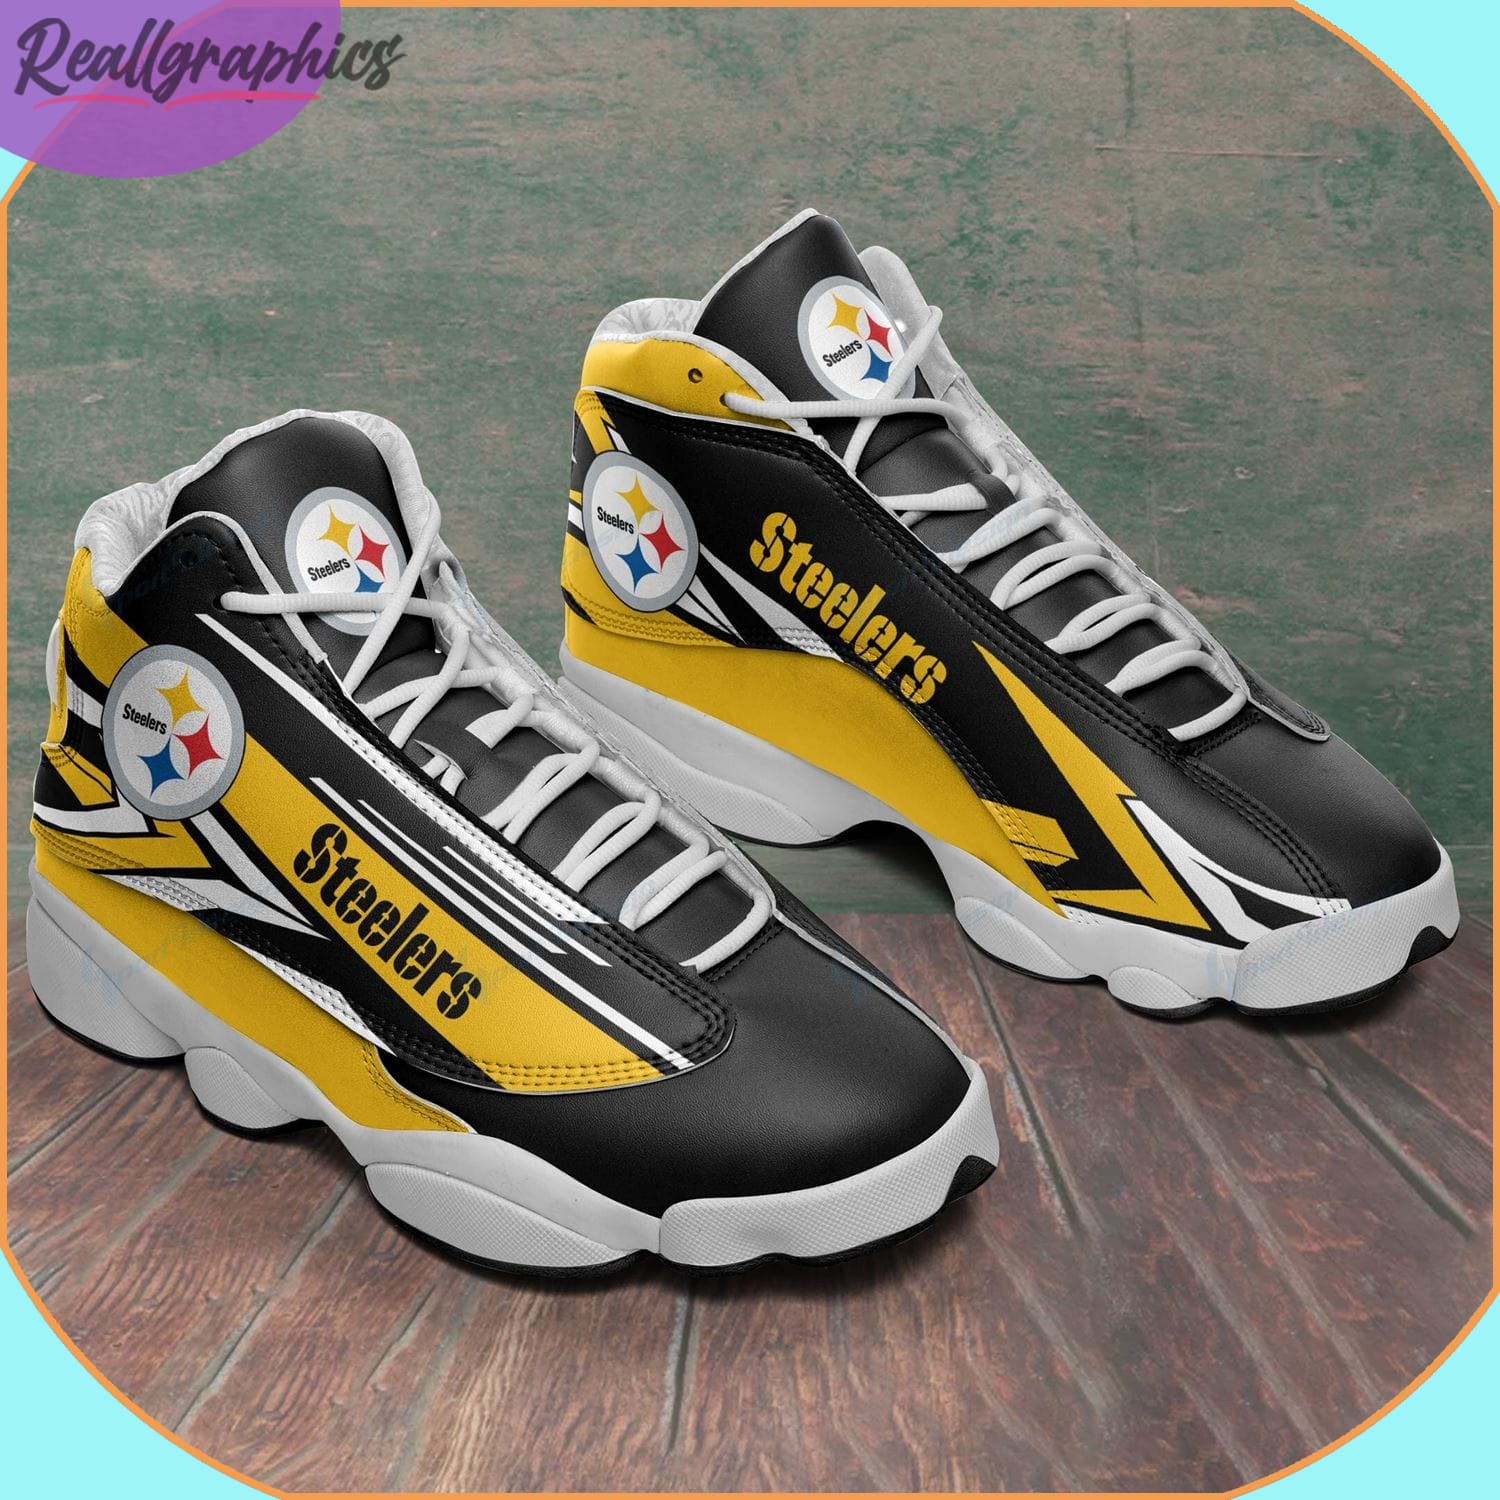 Pittsburgh Steelers Air Jordan 13 Sneaker, Custom Pittsburgh Steelers Shoes  - Reallgraphics